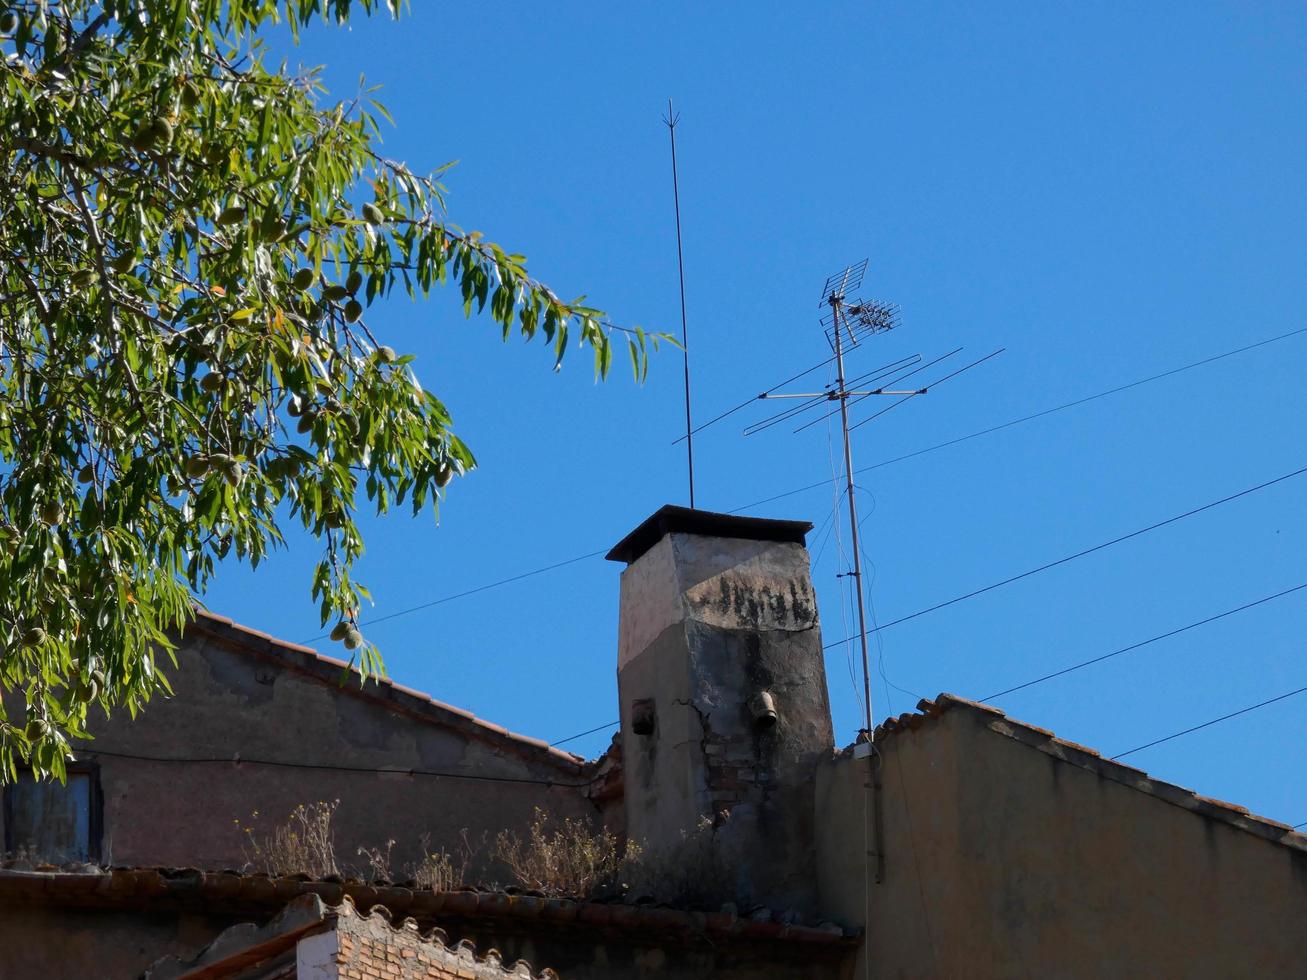 chimenea exterior en casa de campo en los alrededores de barcelona, españa foto